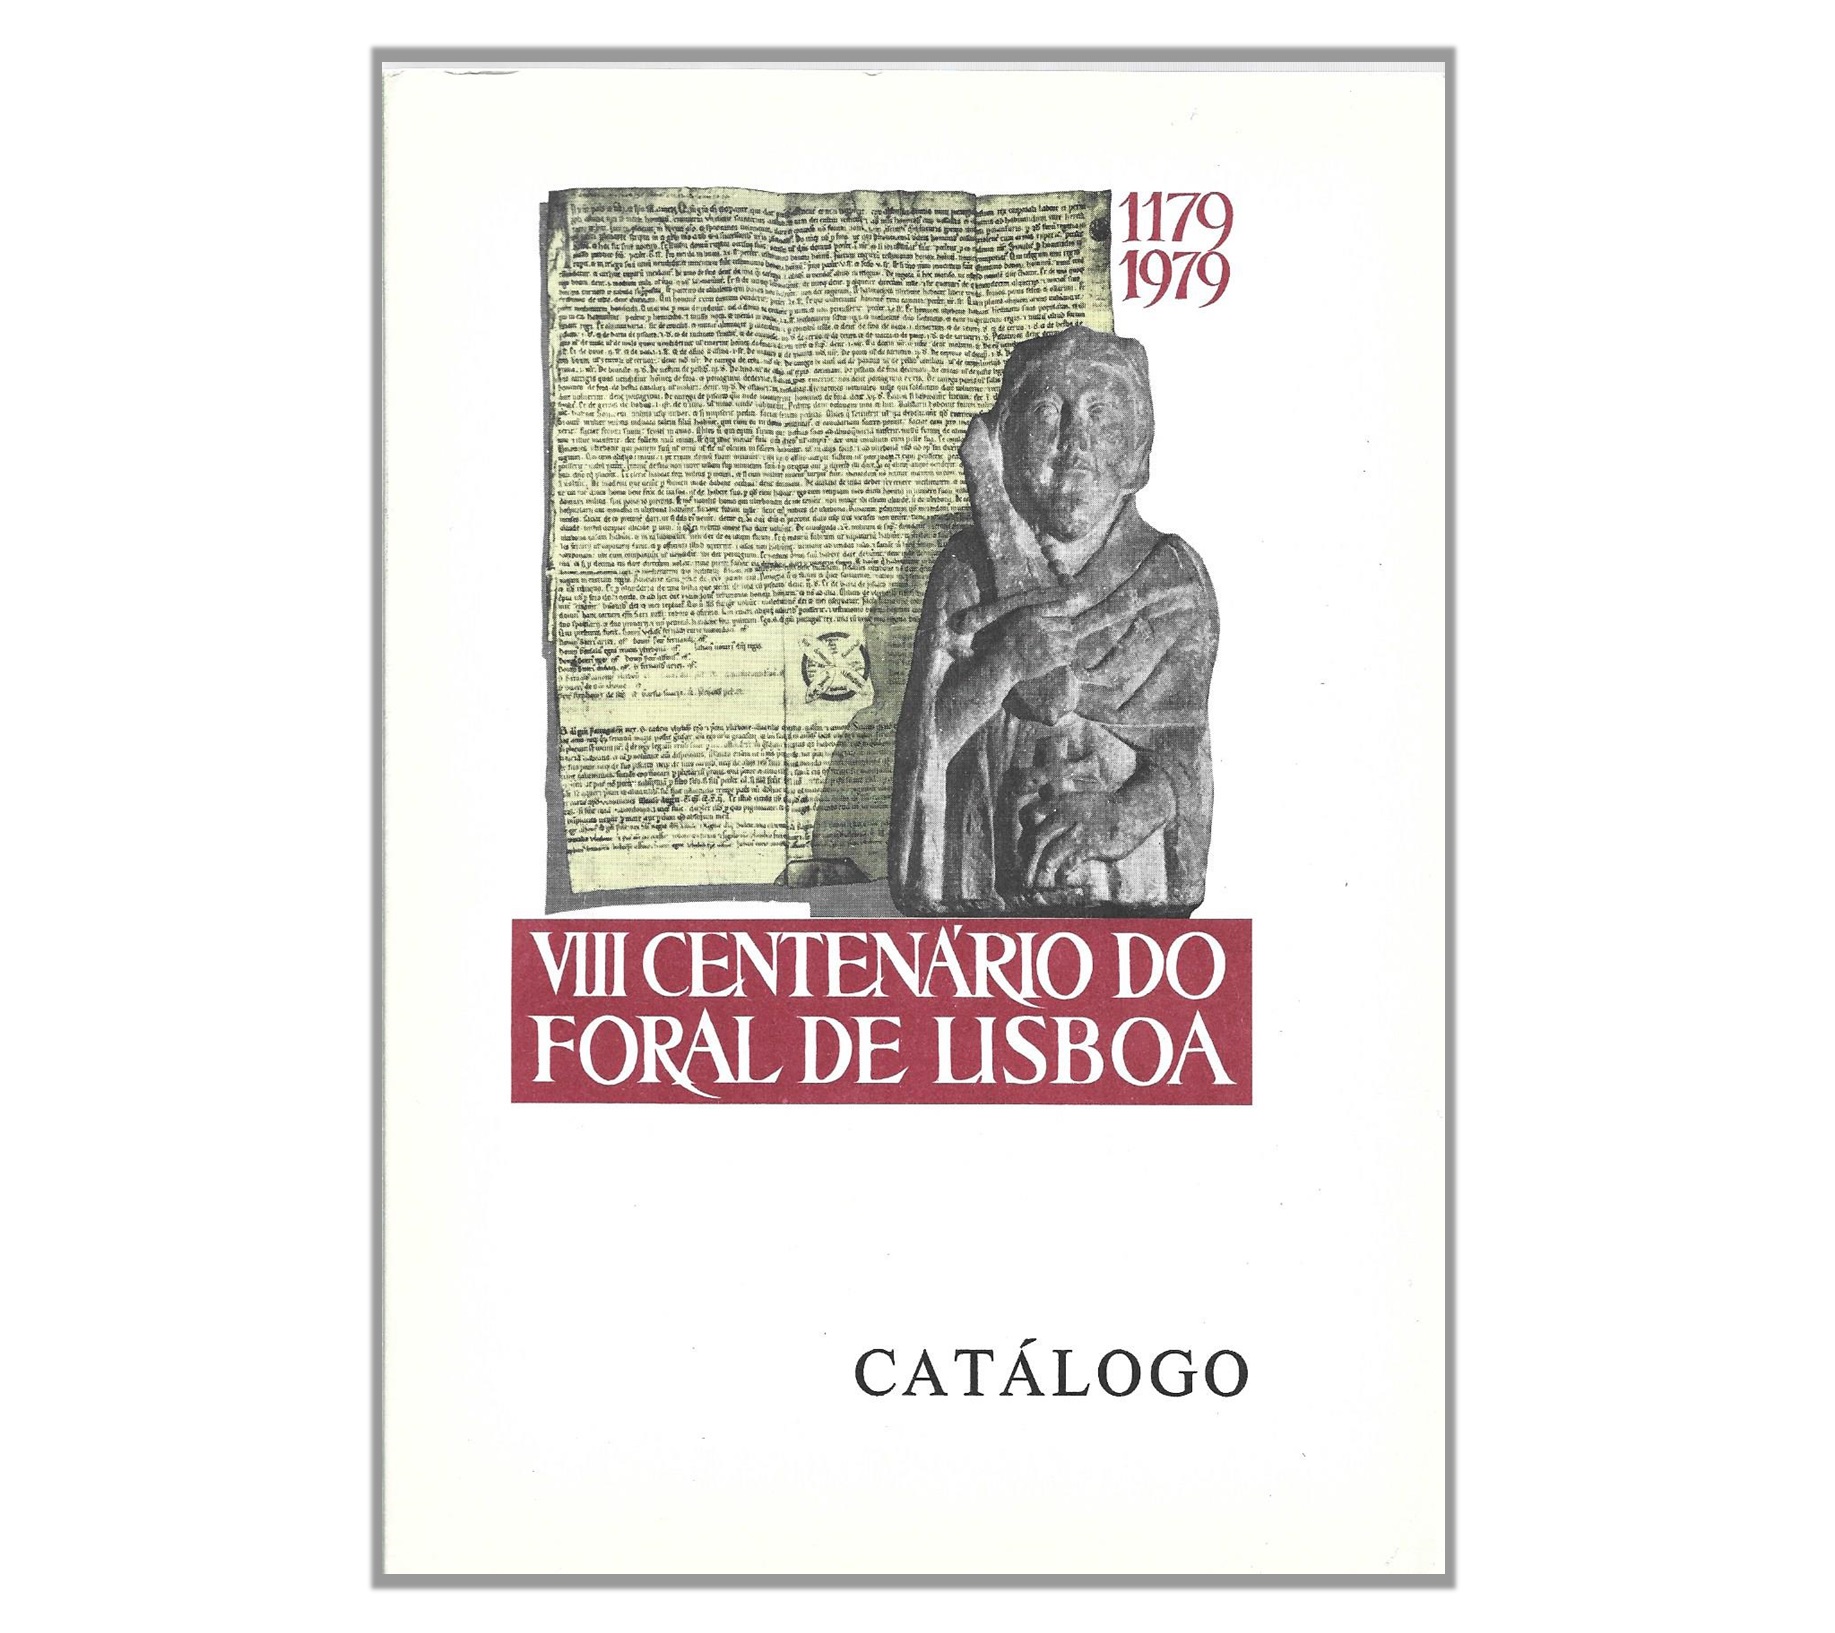 VIII CENTENÁRIO DO FORAL DE LISBOA: 1179-1979